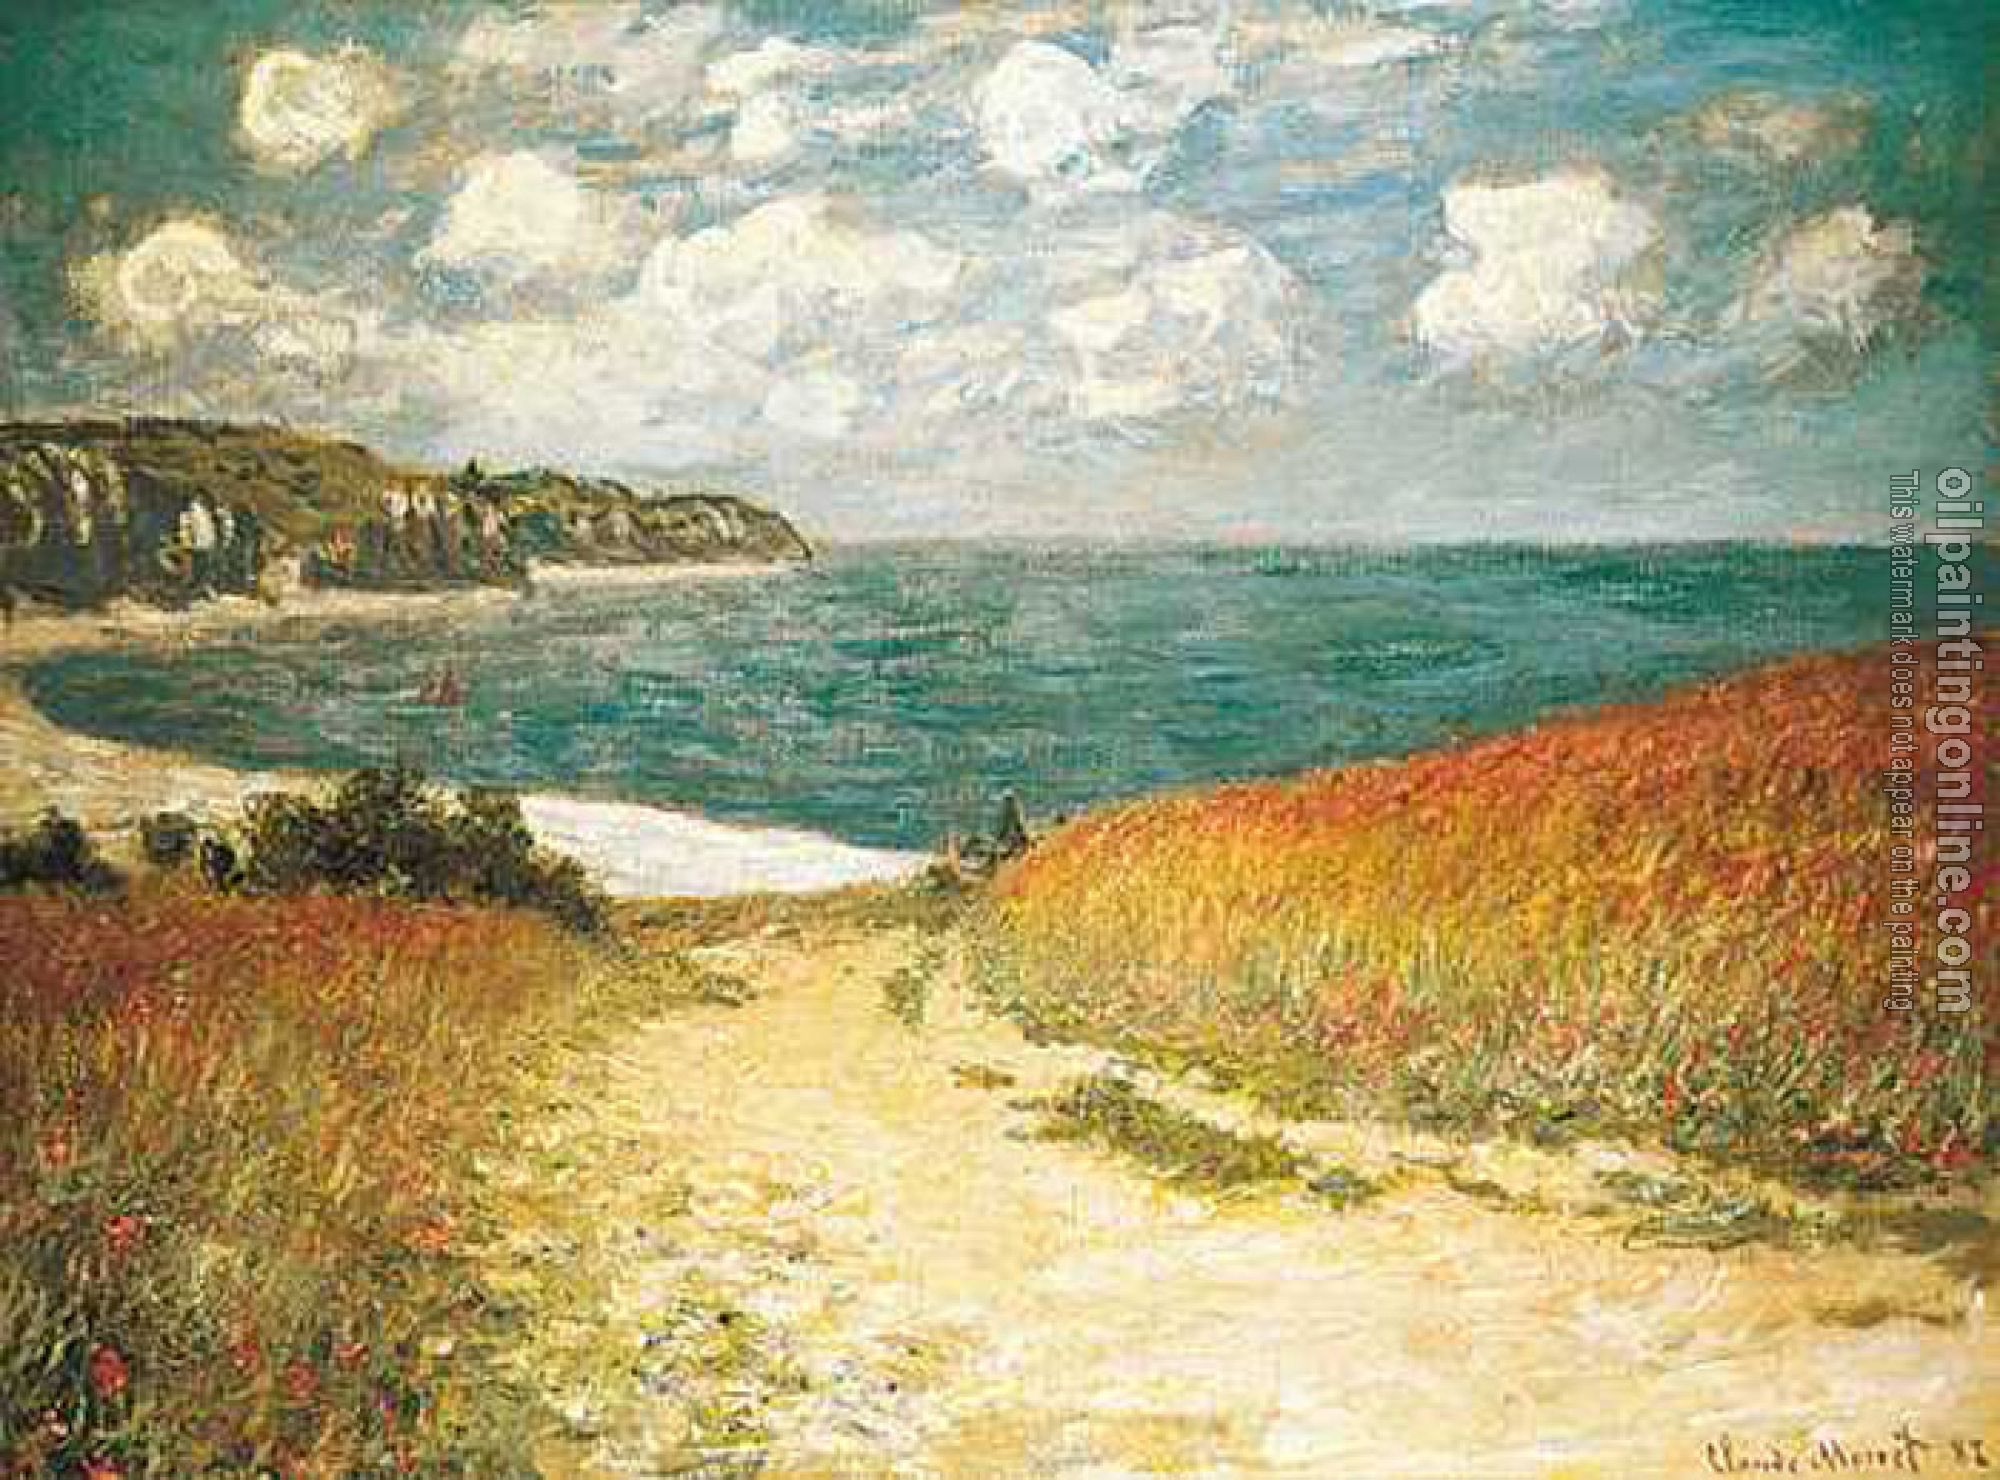 Monet, Claude Oscar - Path Through the Corn at Pourville